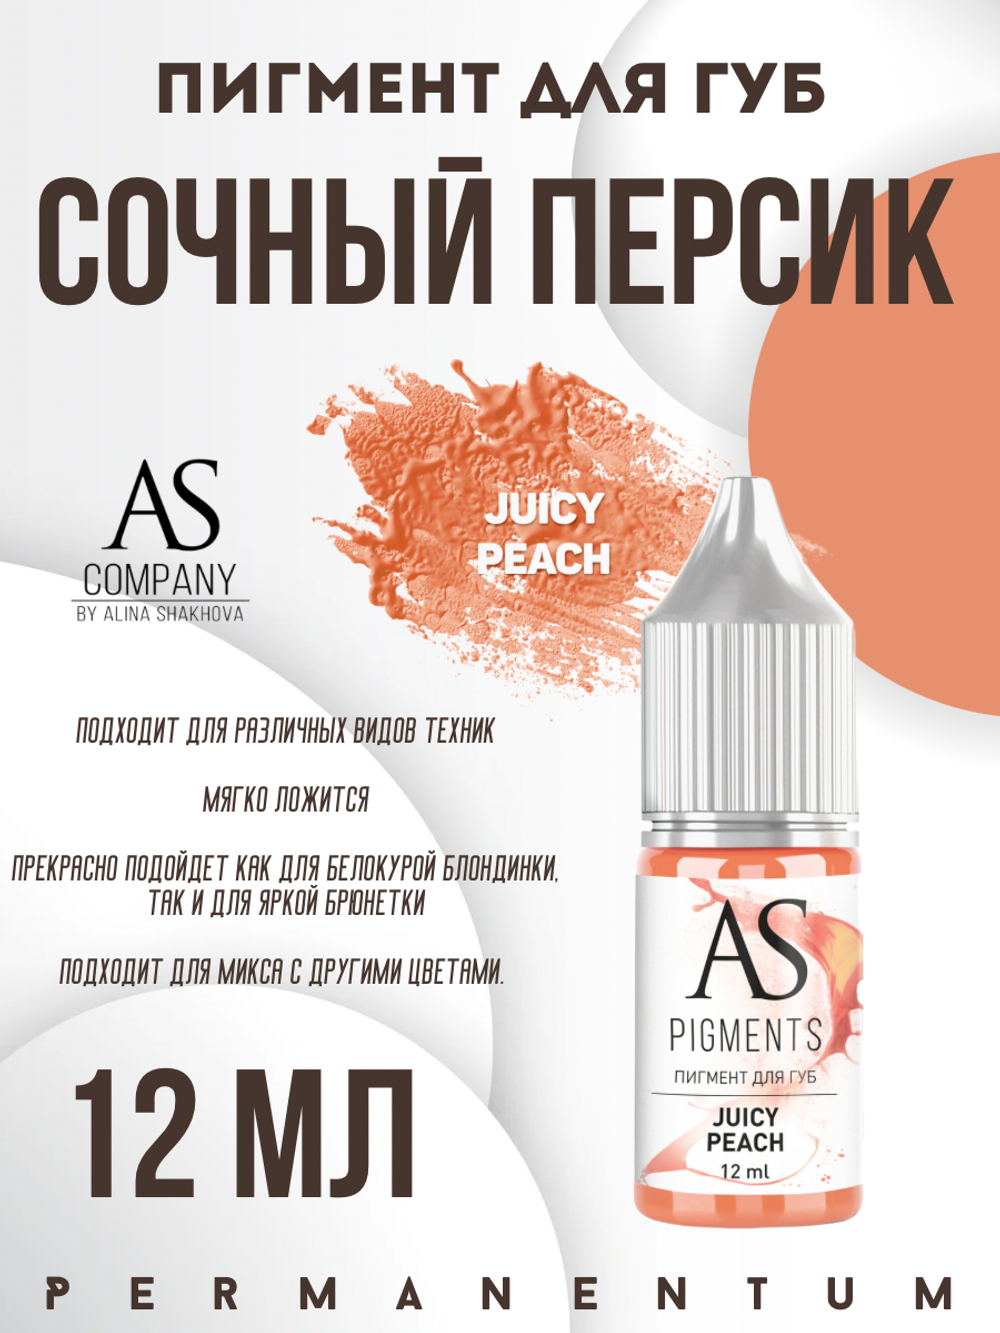 Пигмент для губ Juicy peach (Сочный персик) от Алины Шаховой